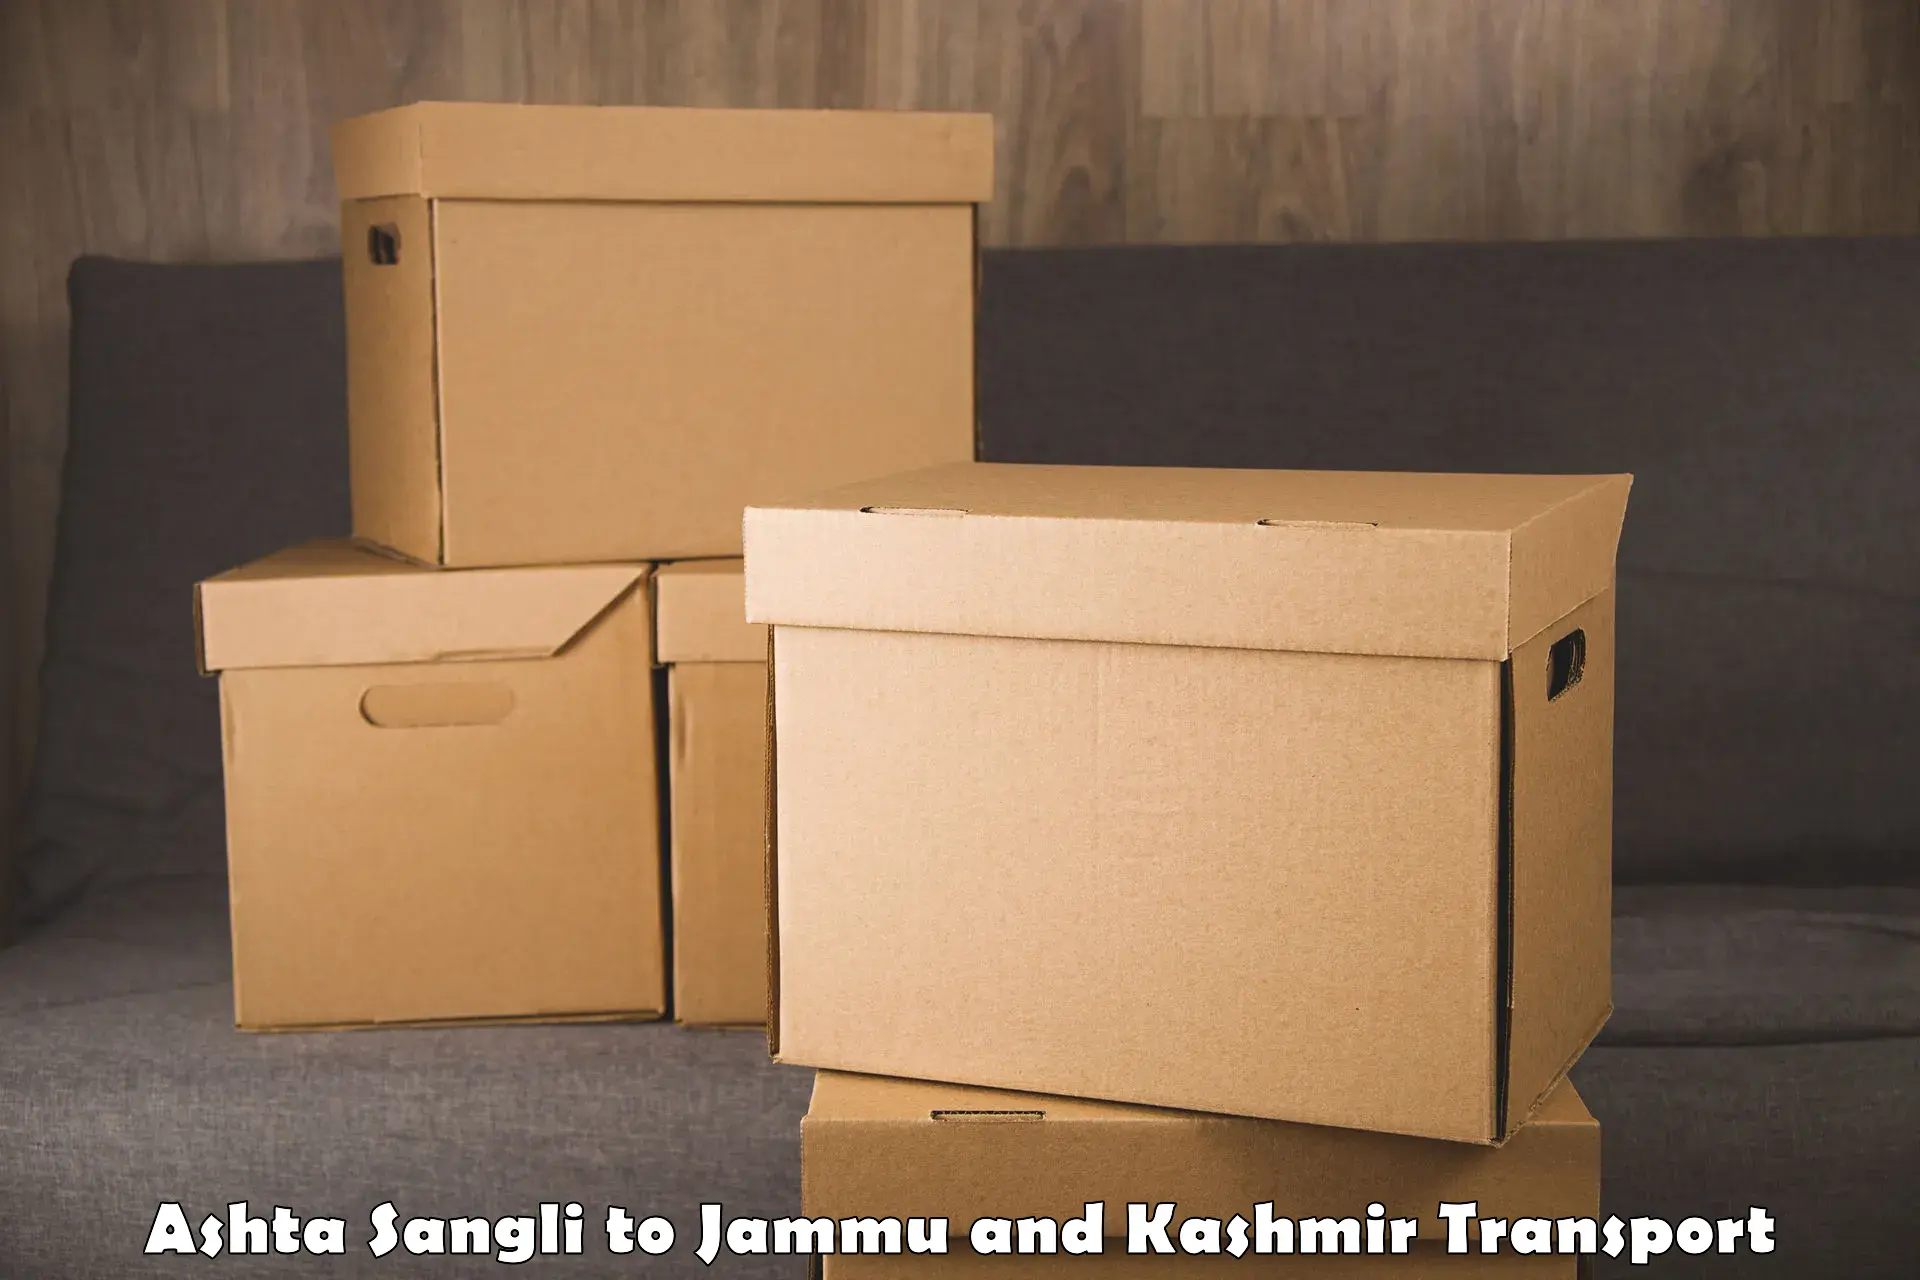 Nearest transport service Ashta Sangli to Srinagar Kashmir